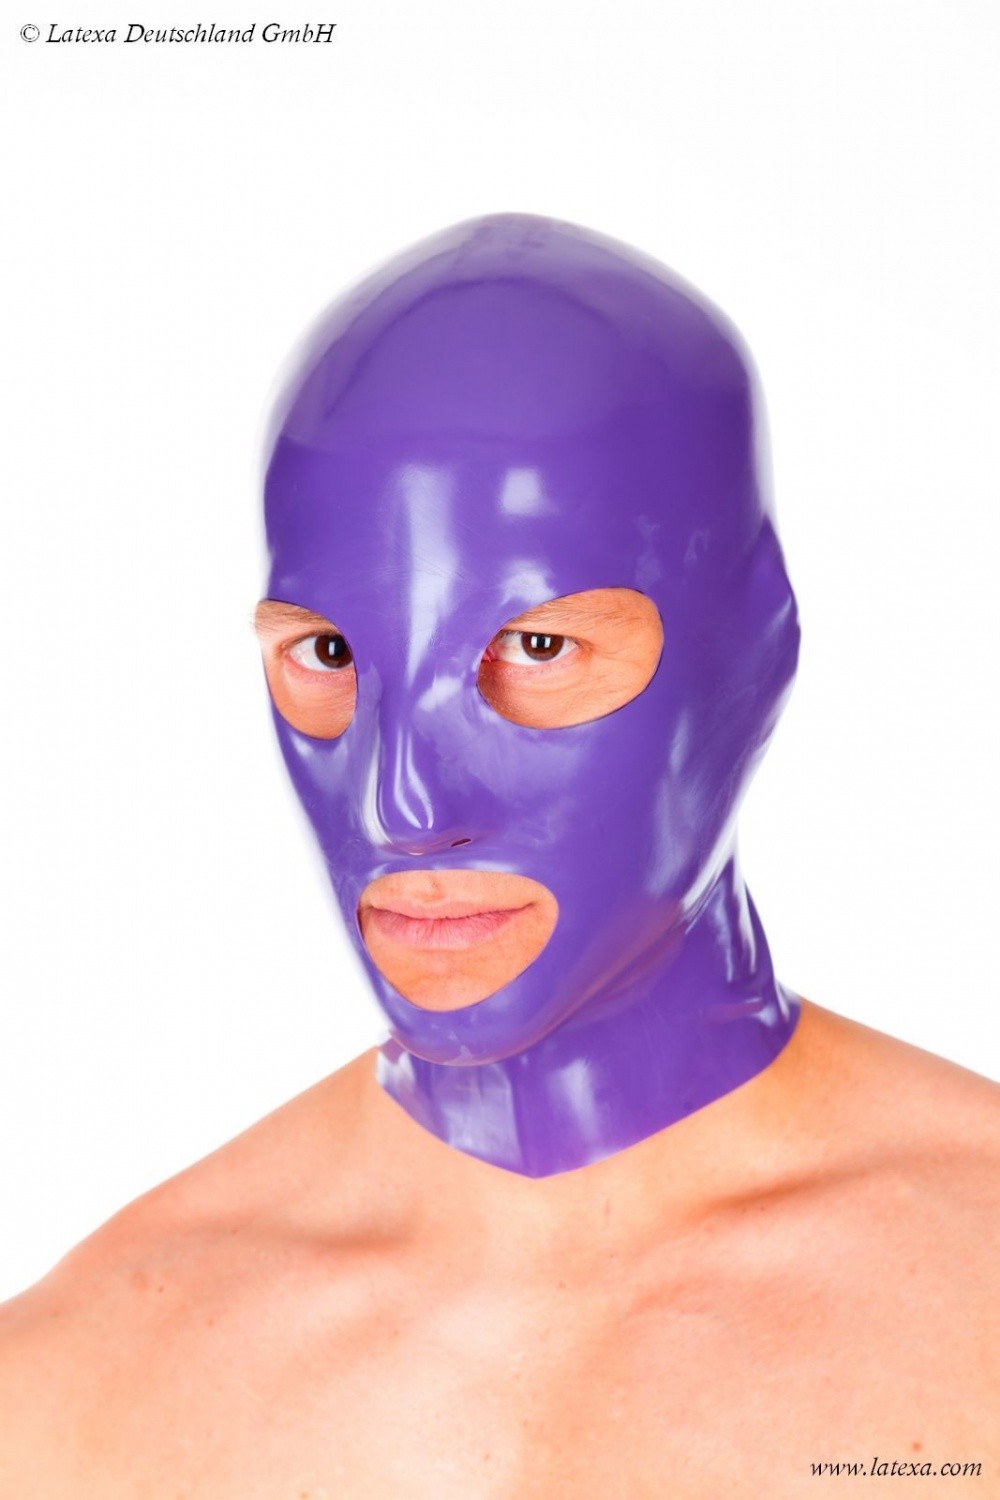 Masque anatomic pour homme en latex 0.6 mm avec des ouvertures pour le